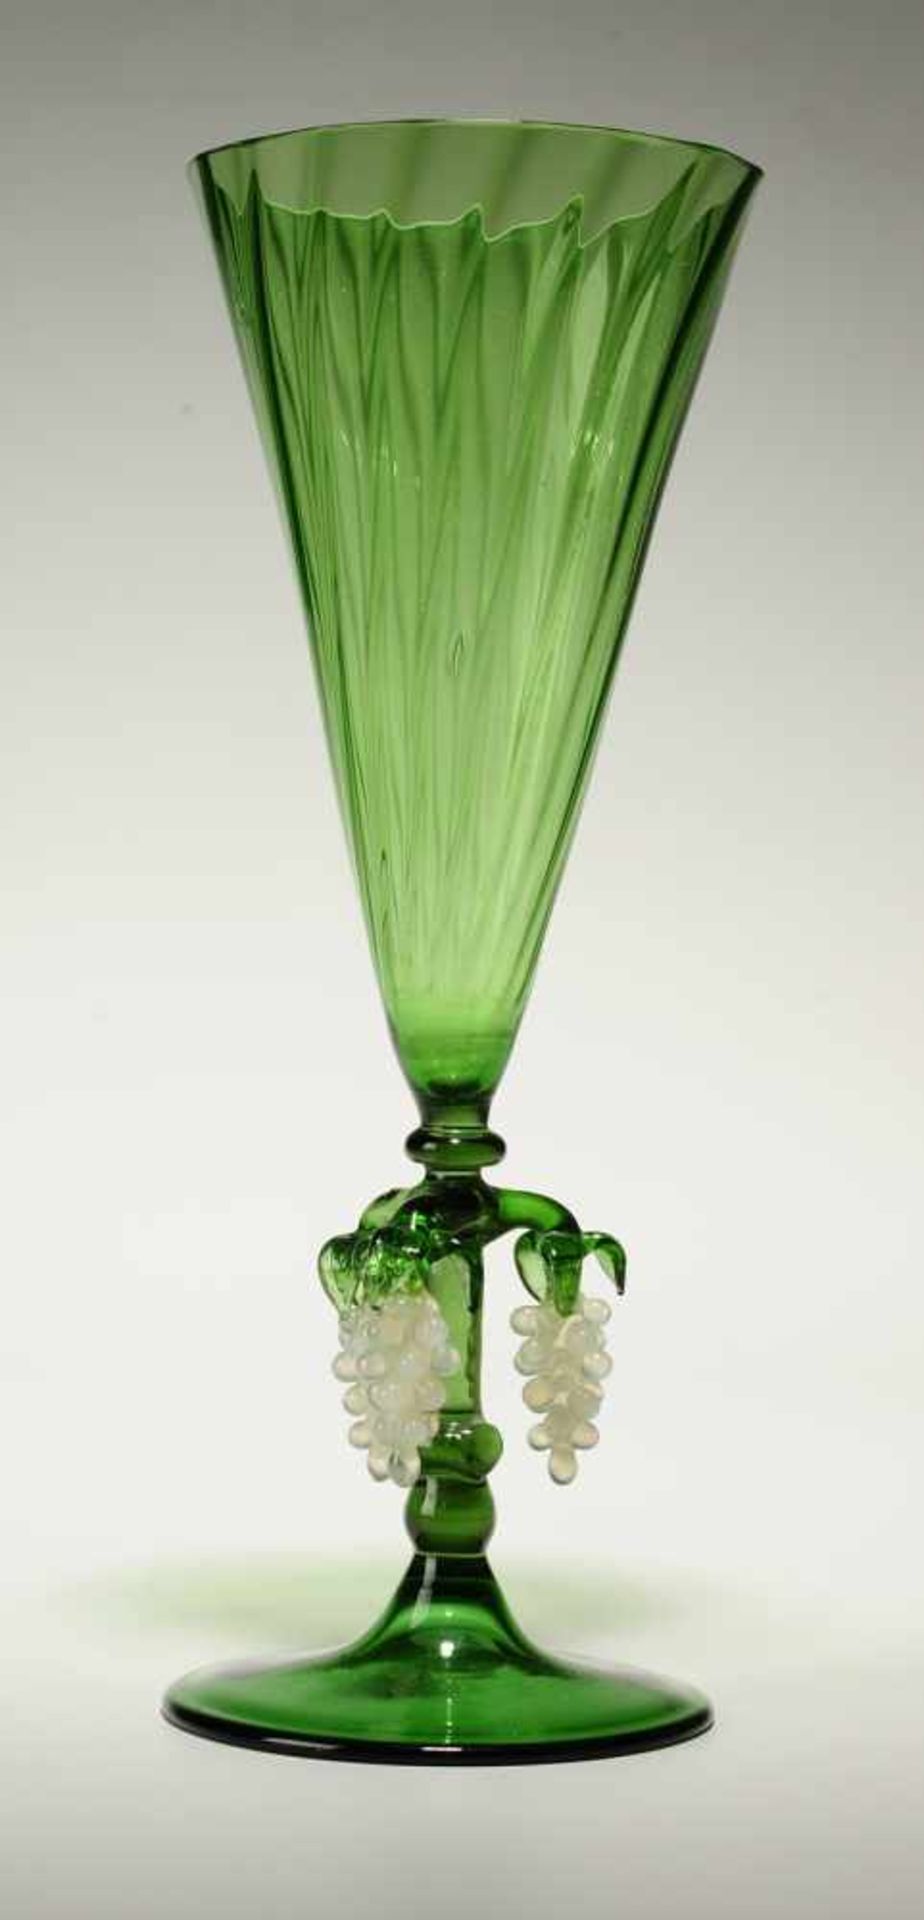 Kelchglas Grünes u. milchopales Glas, Formgeblasen. Scheibenfuß u. kurzer, schmaler Schaft. Konische